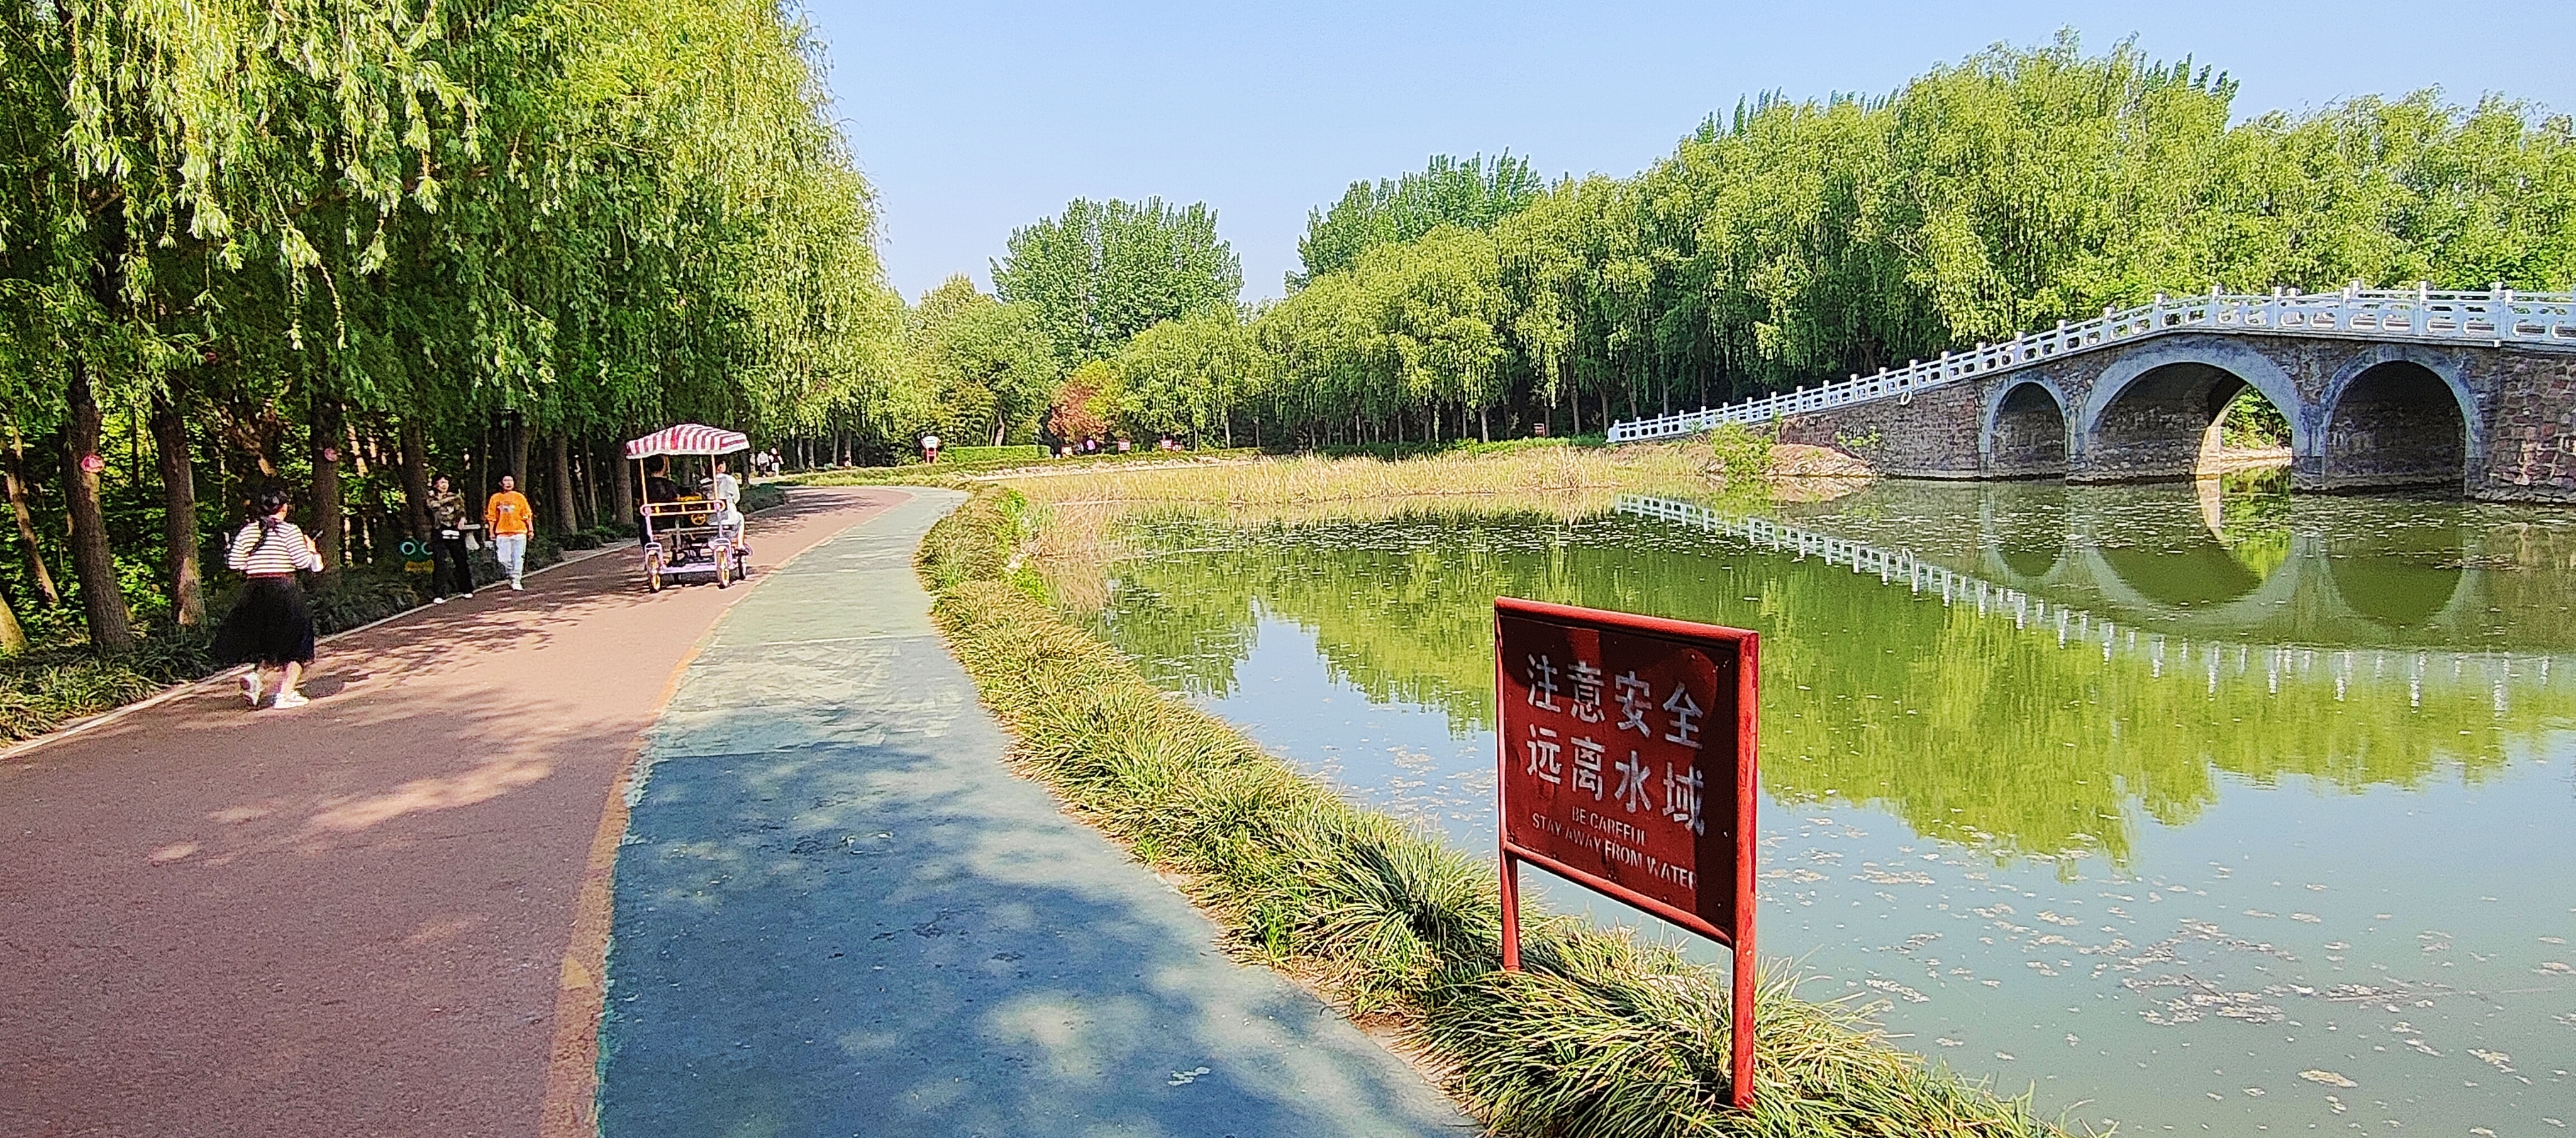 拍摄时间:2024年4月18日拍摄地点:禹州市森林植物园手机随拍:贺景昌